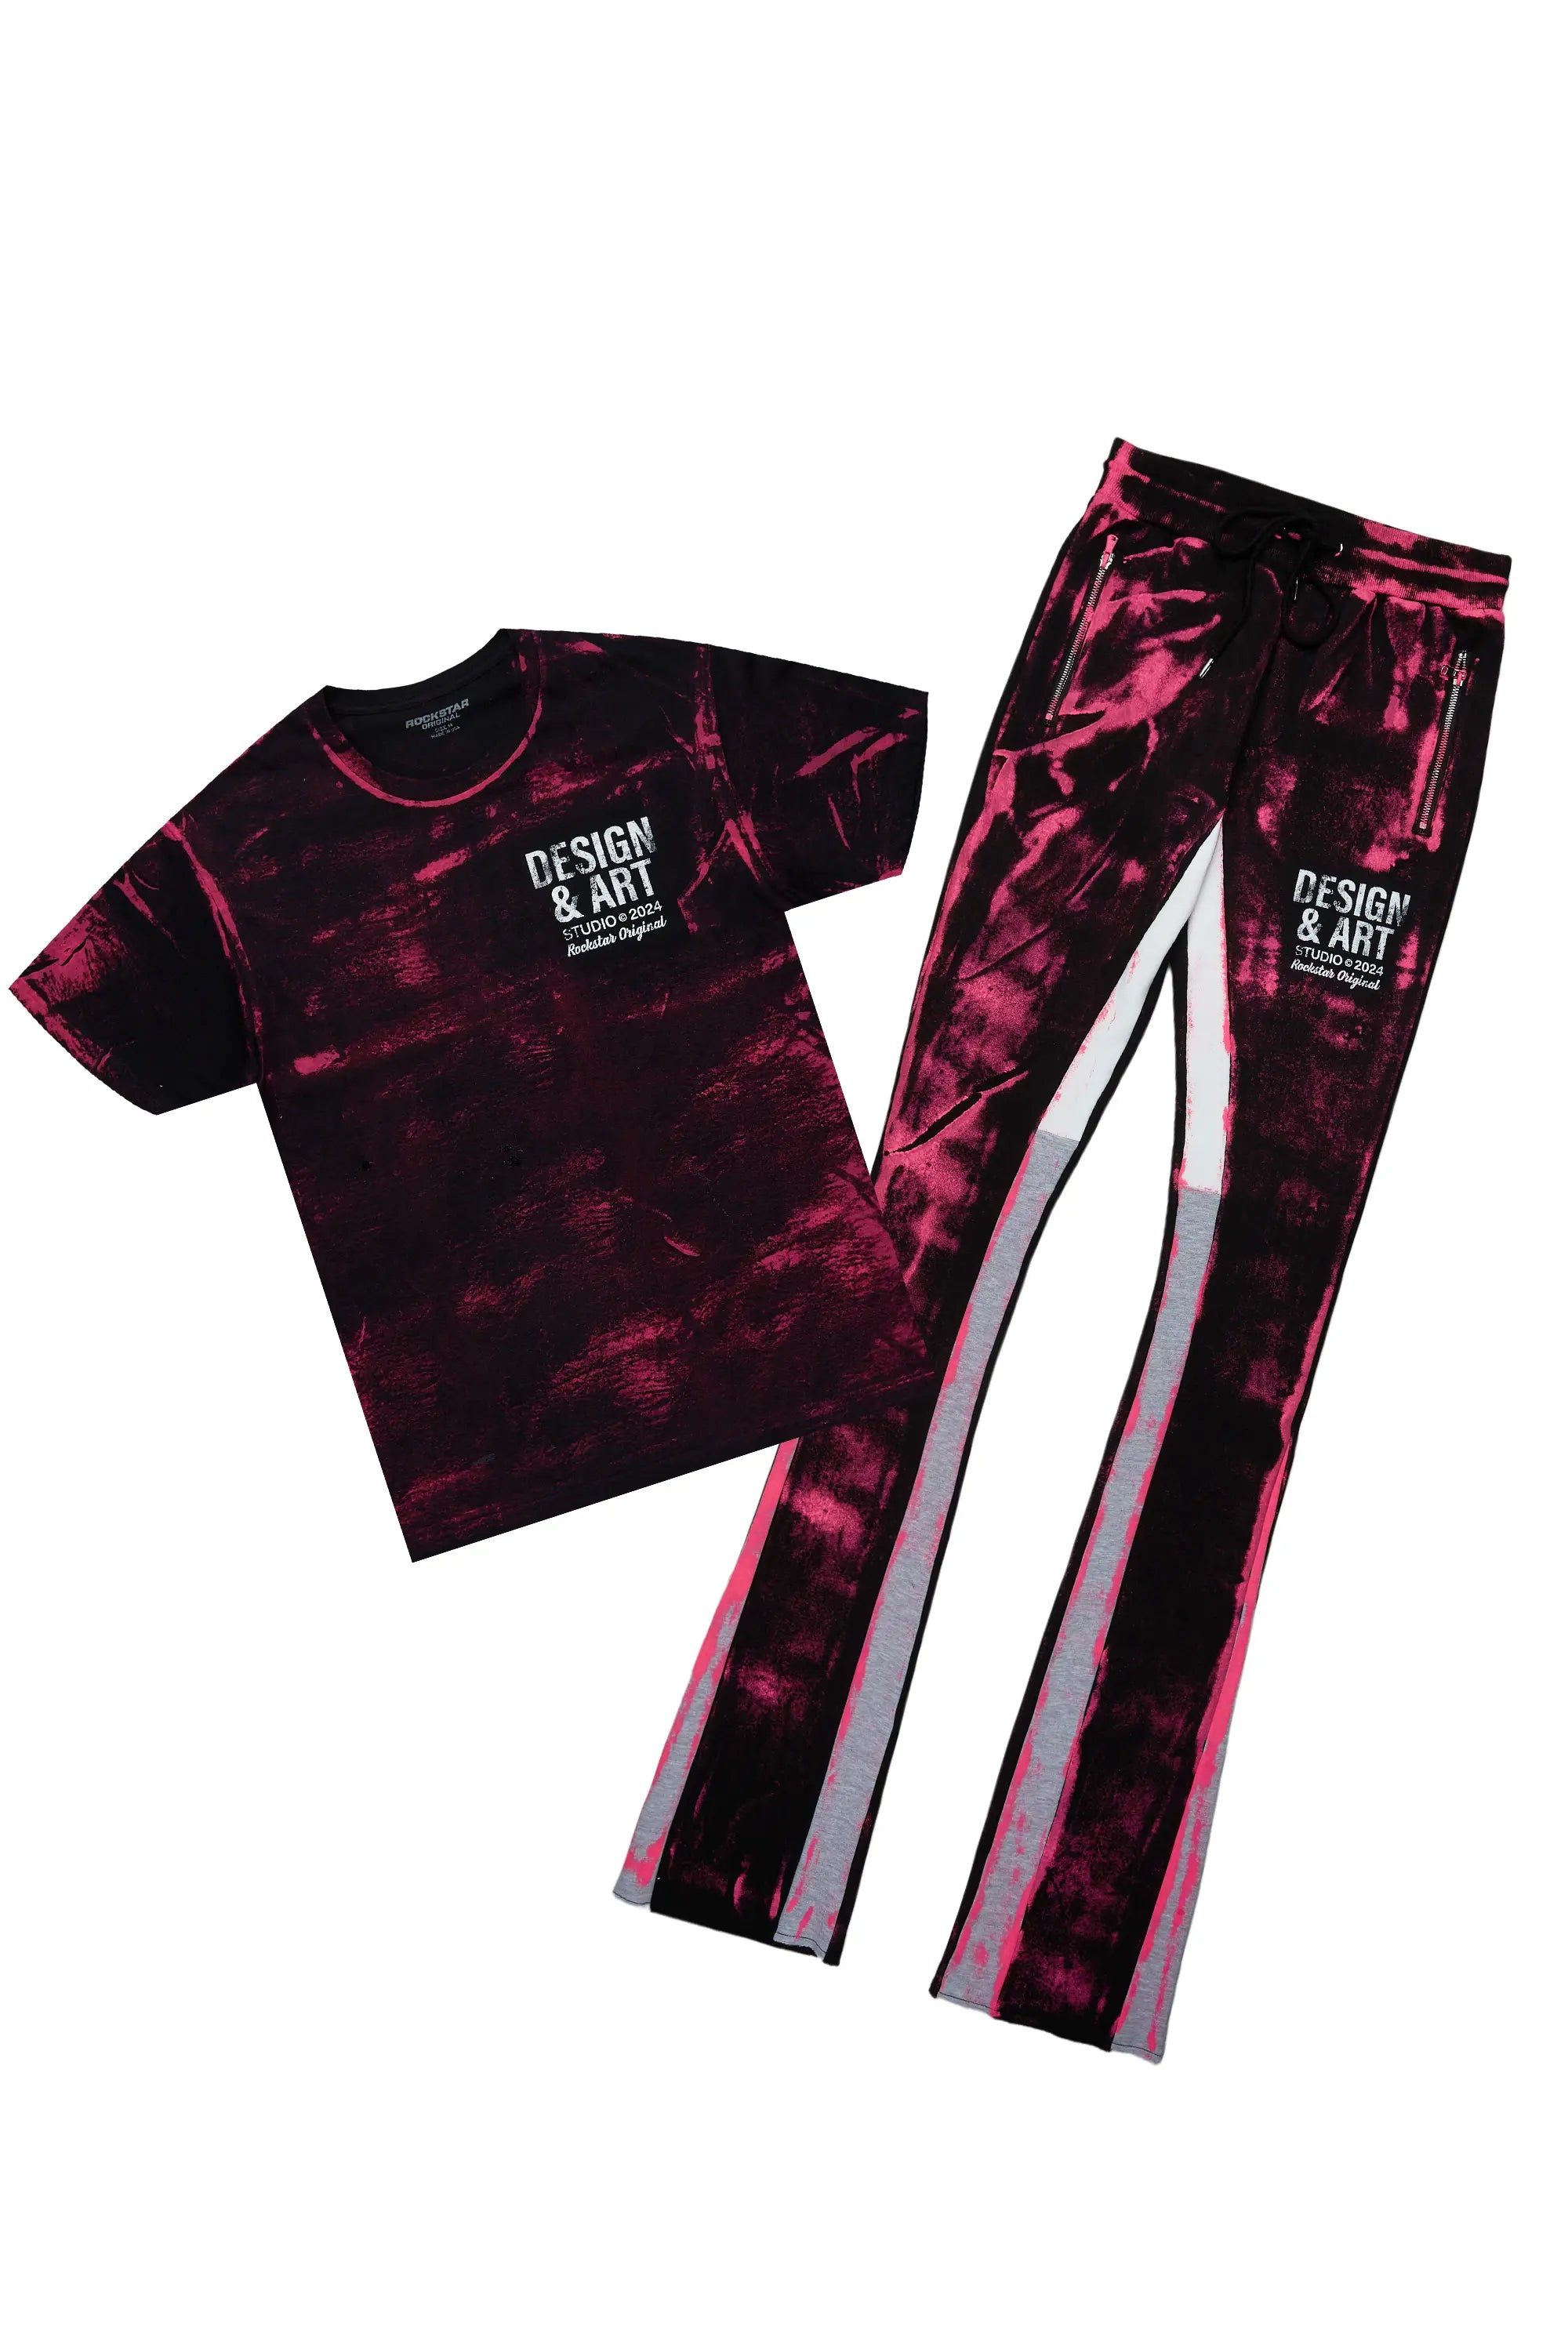 Eldon Black/Pink T-Shirt/Super Stacked Flare Track Set